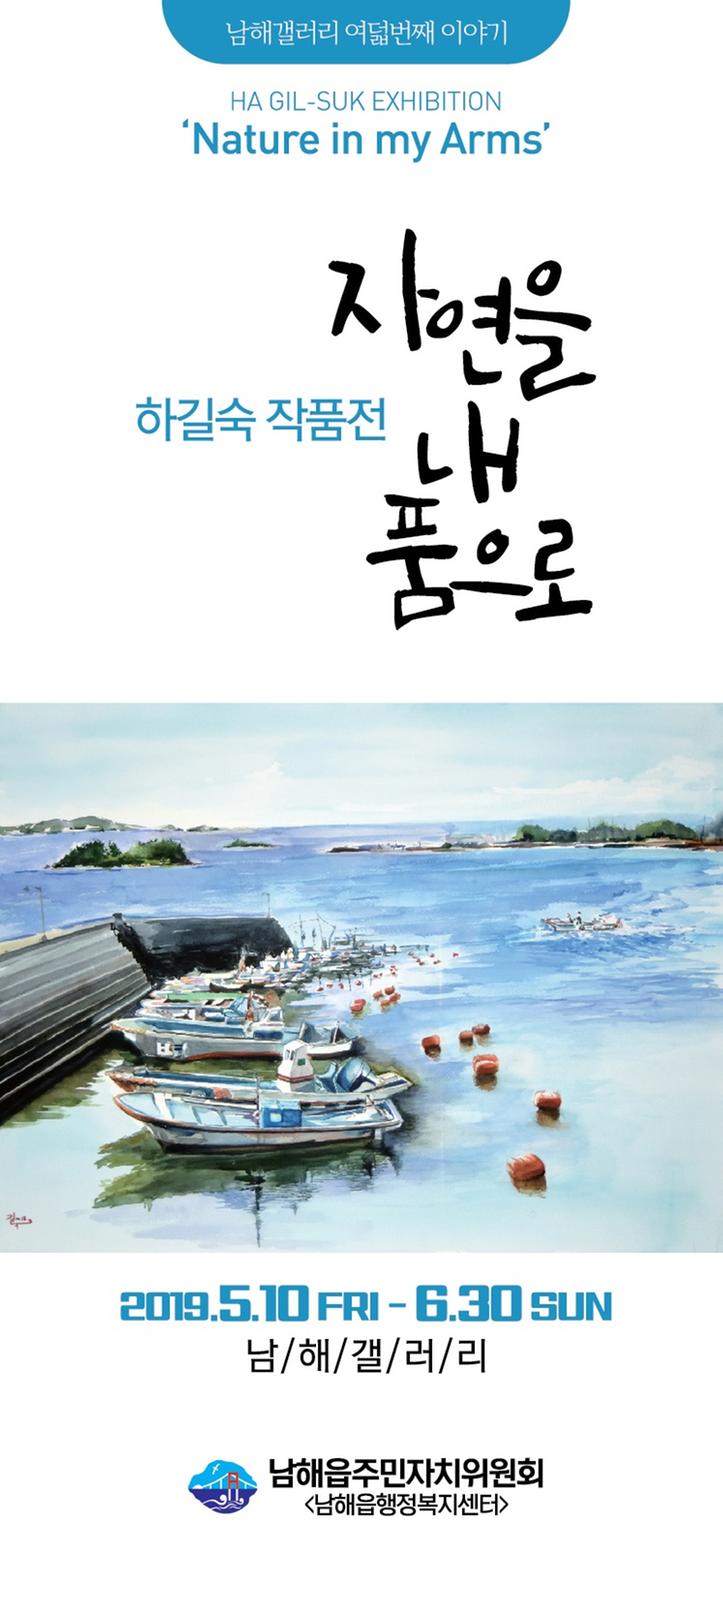 남해갤러리, 하길숙 작가 ‘자연을 내 품으로’ 미술전 개최